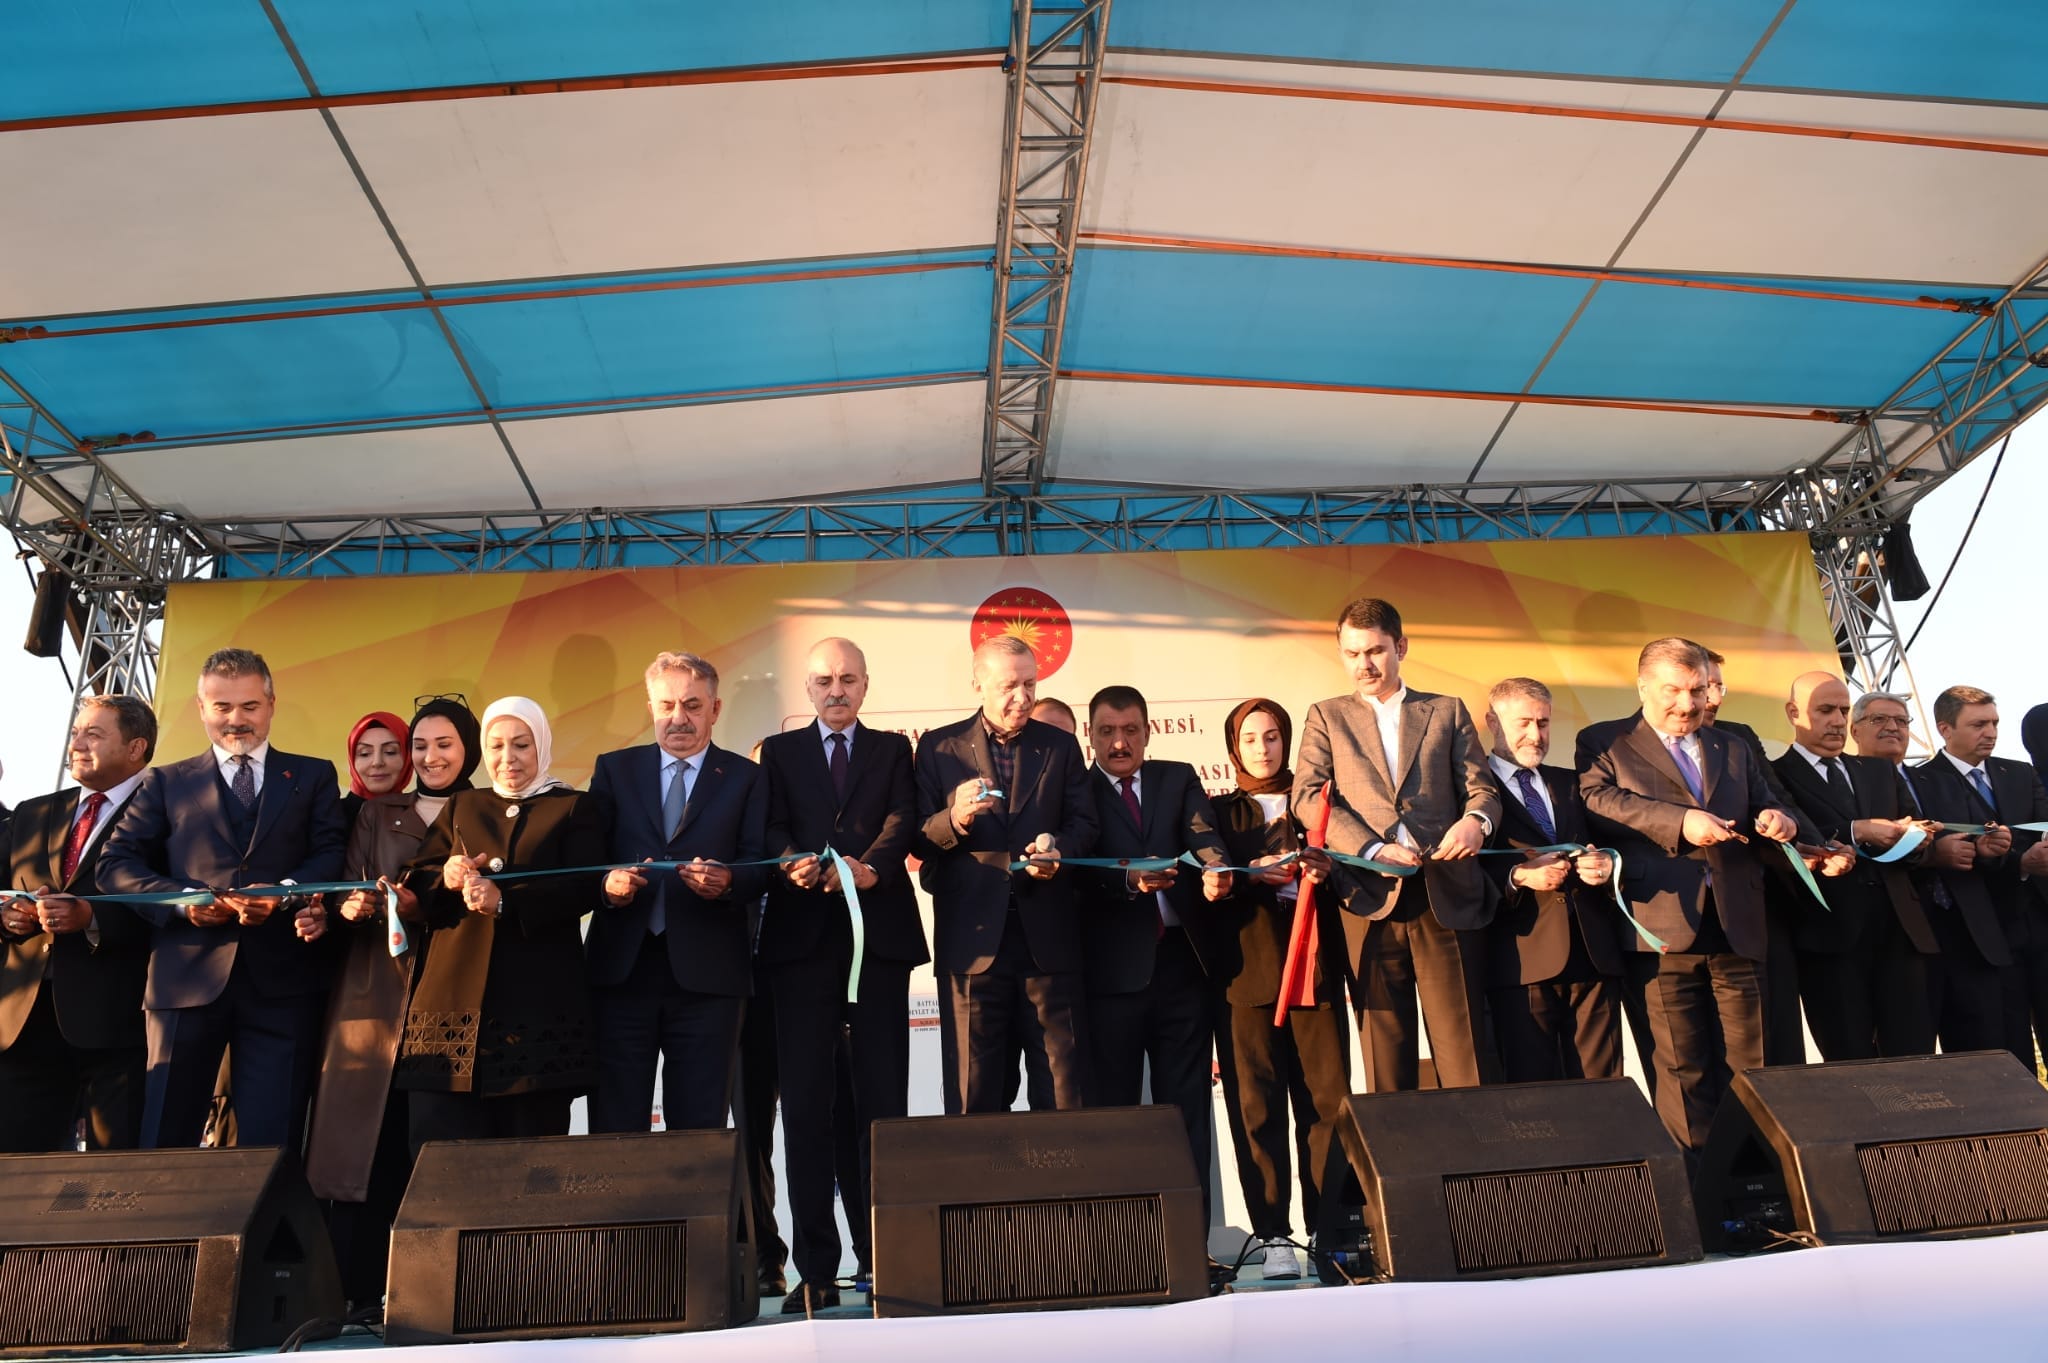 133 Projenin Toplu Açılış Törenini gerçekleştiren Cumhurbaşkanı Erdoğan